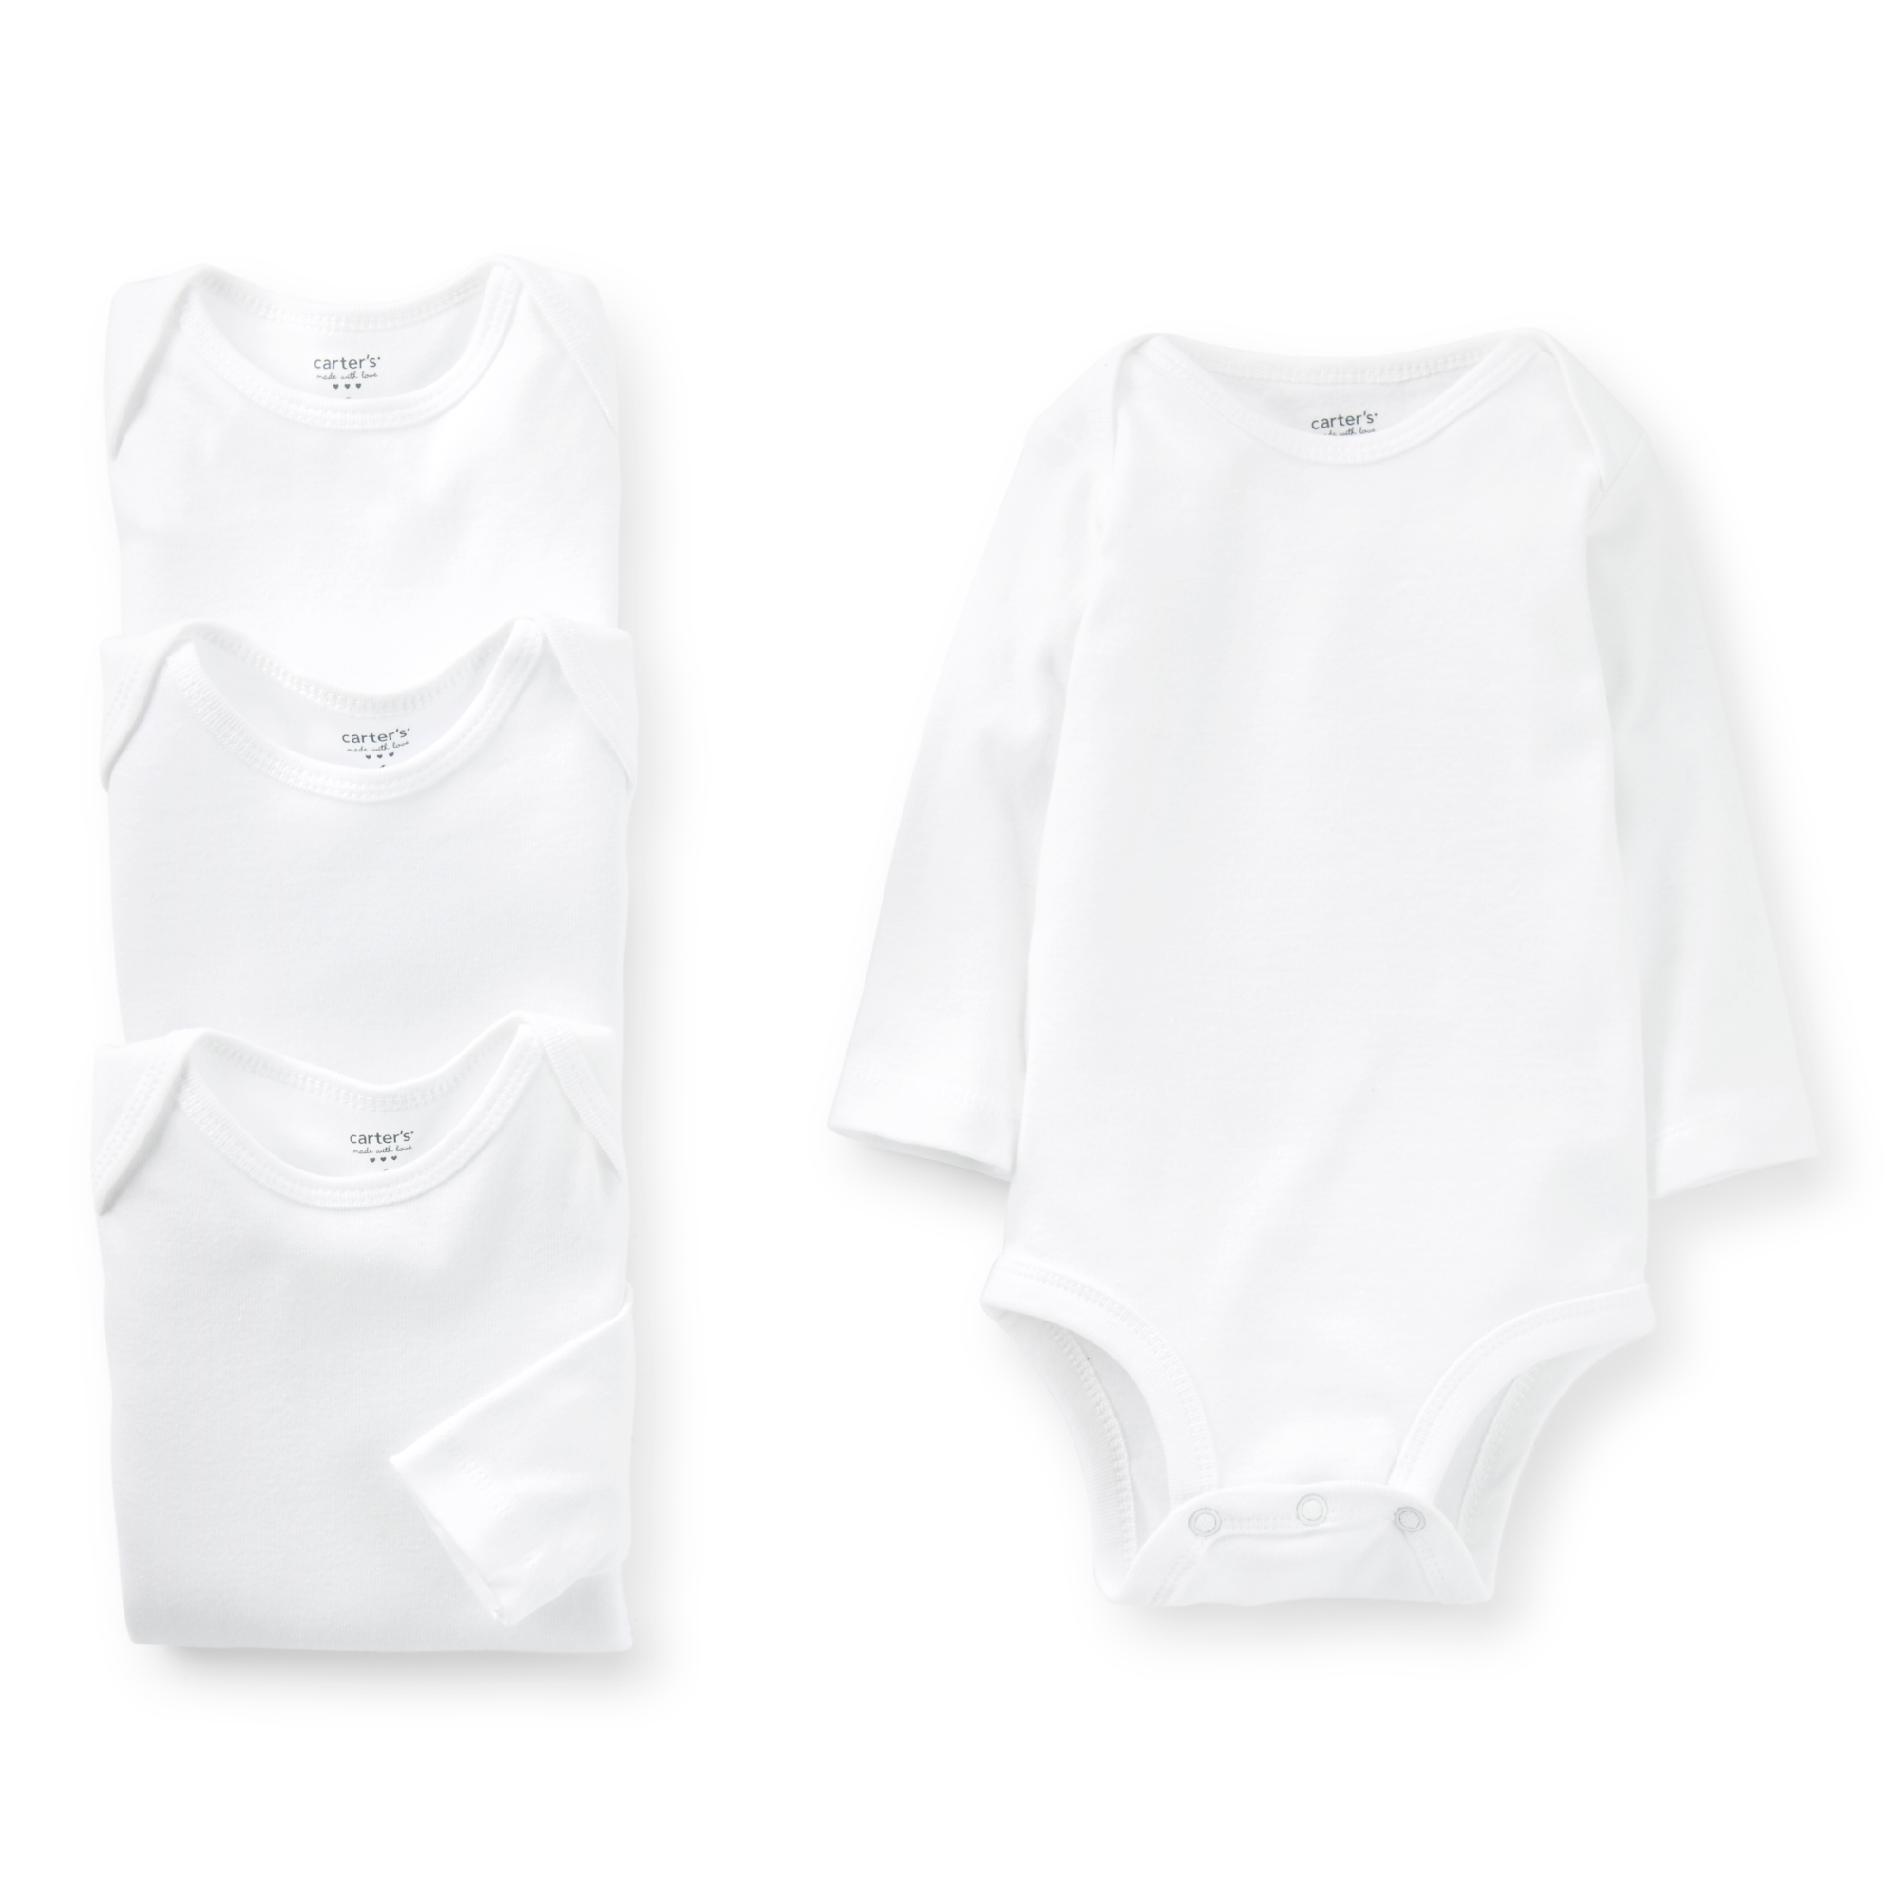 Carter's Newborn & Infant 4-pack White Long Sleeved Bodysuits